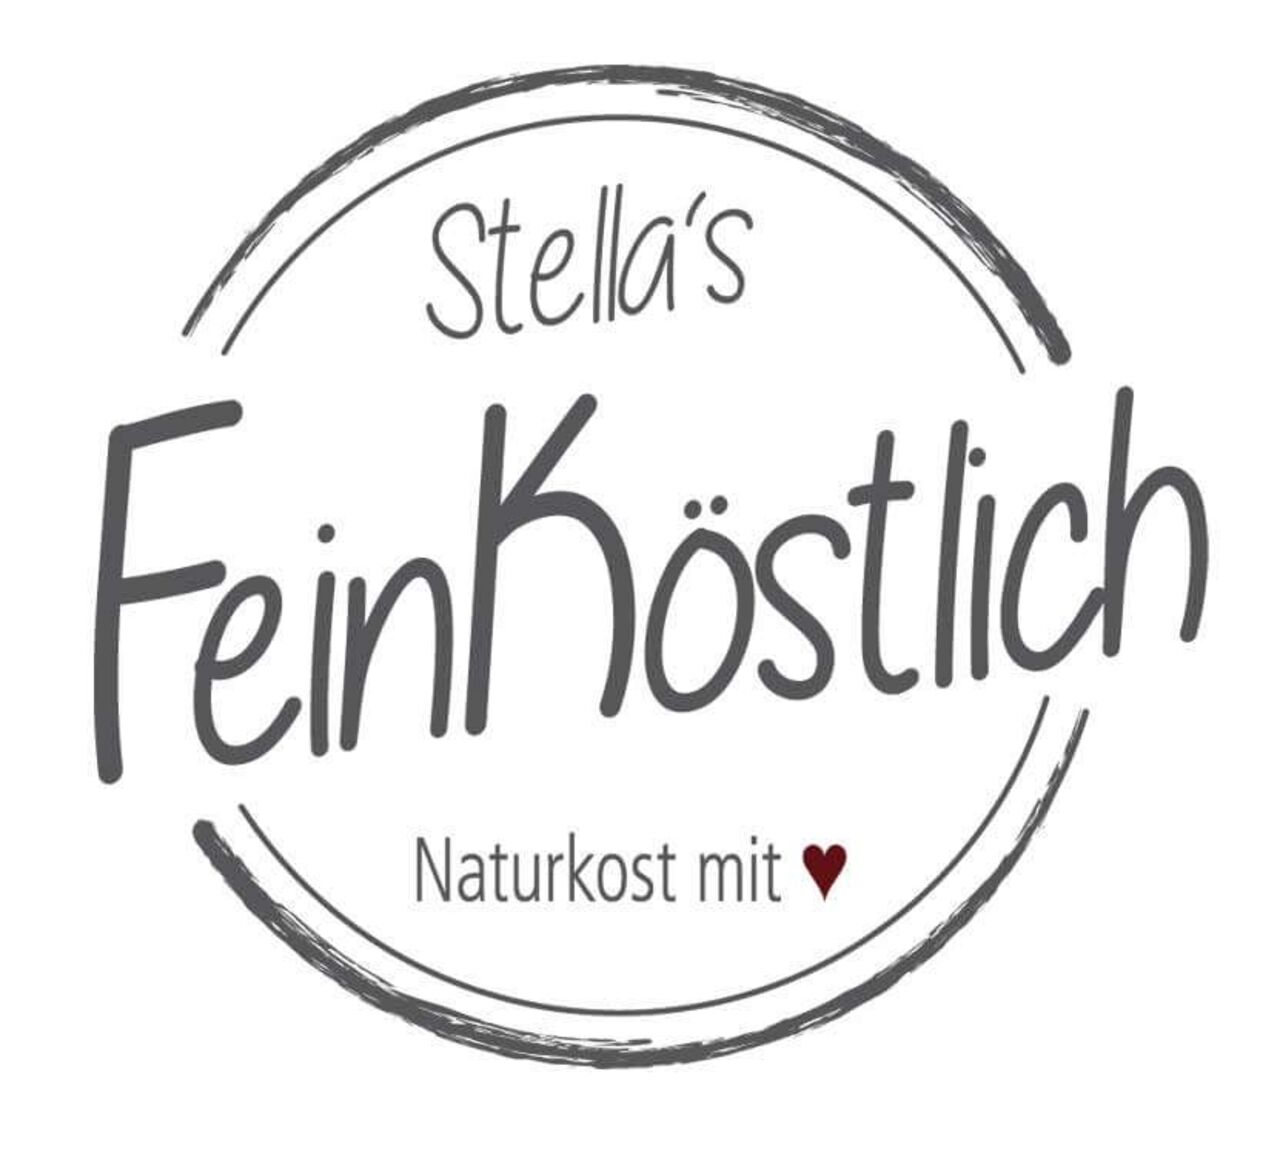 A photo of Stella’s Feinköstlich